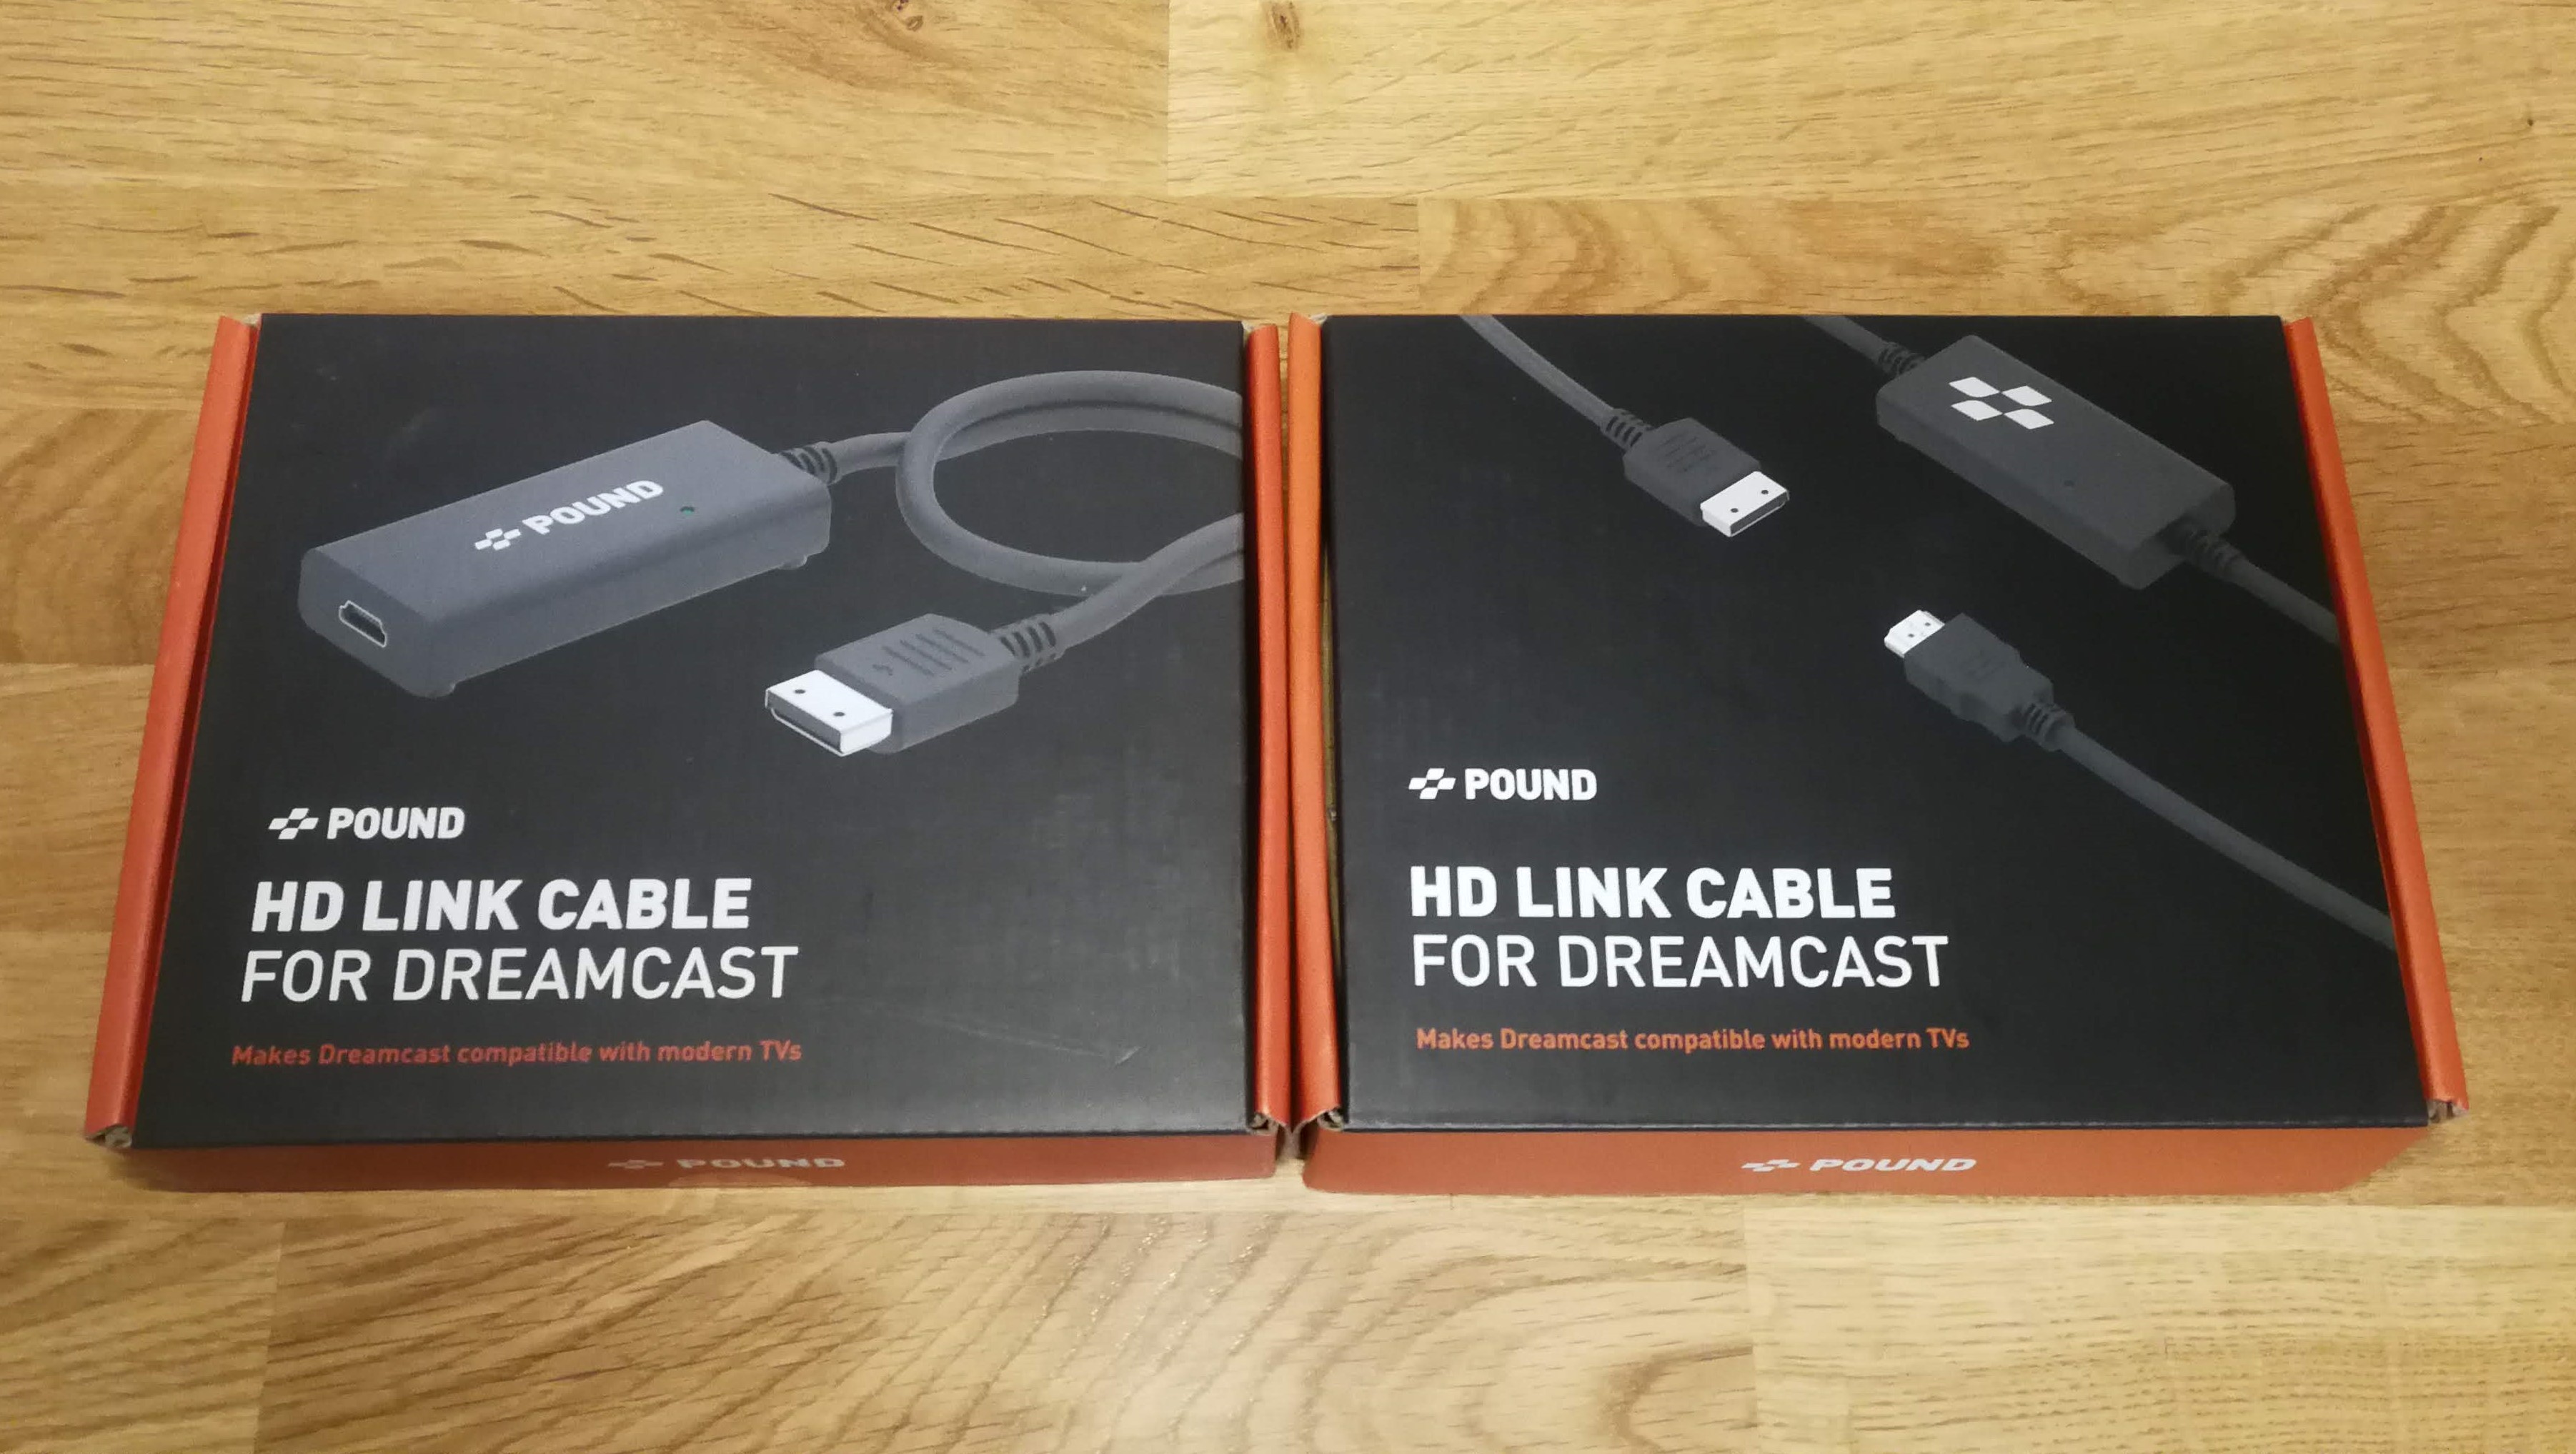 ドリームキャスト用HDMIケーブル「HD Link Cable for Dreamcast」を使ってみた | Aibar's.com